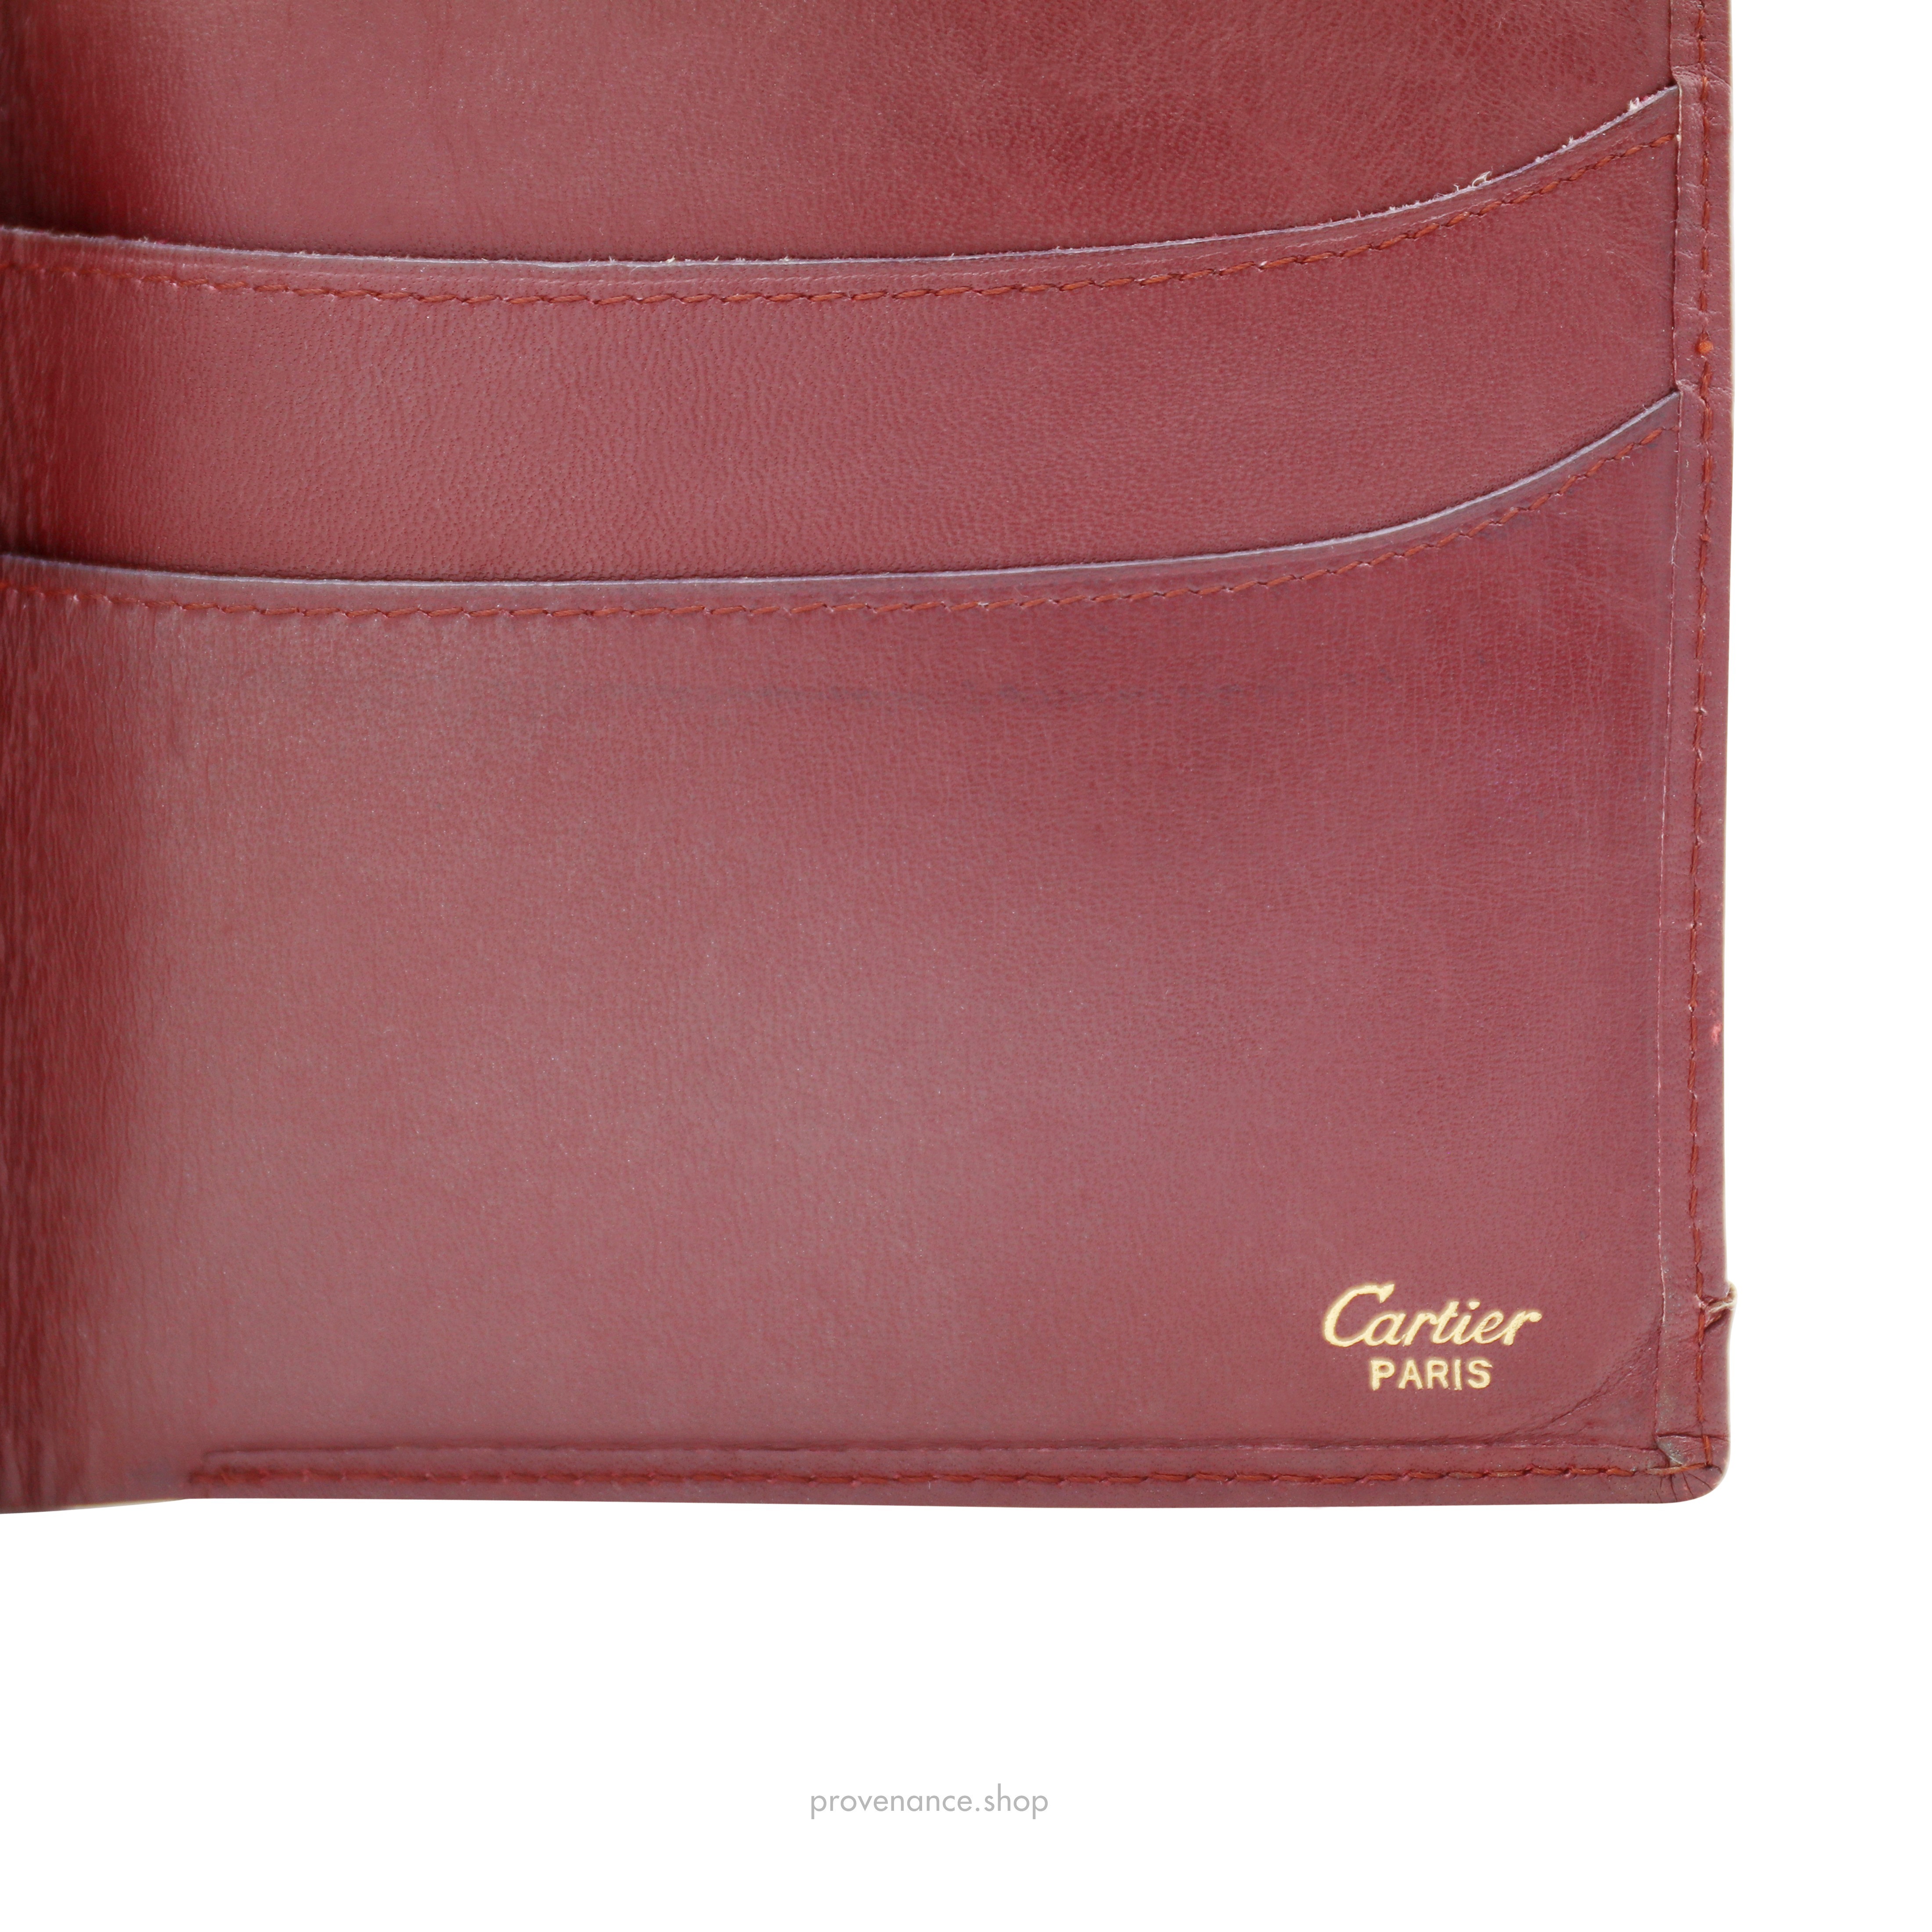 Cartier Bifold Wallet - Burgundy Calfskin Leather - 6